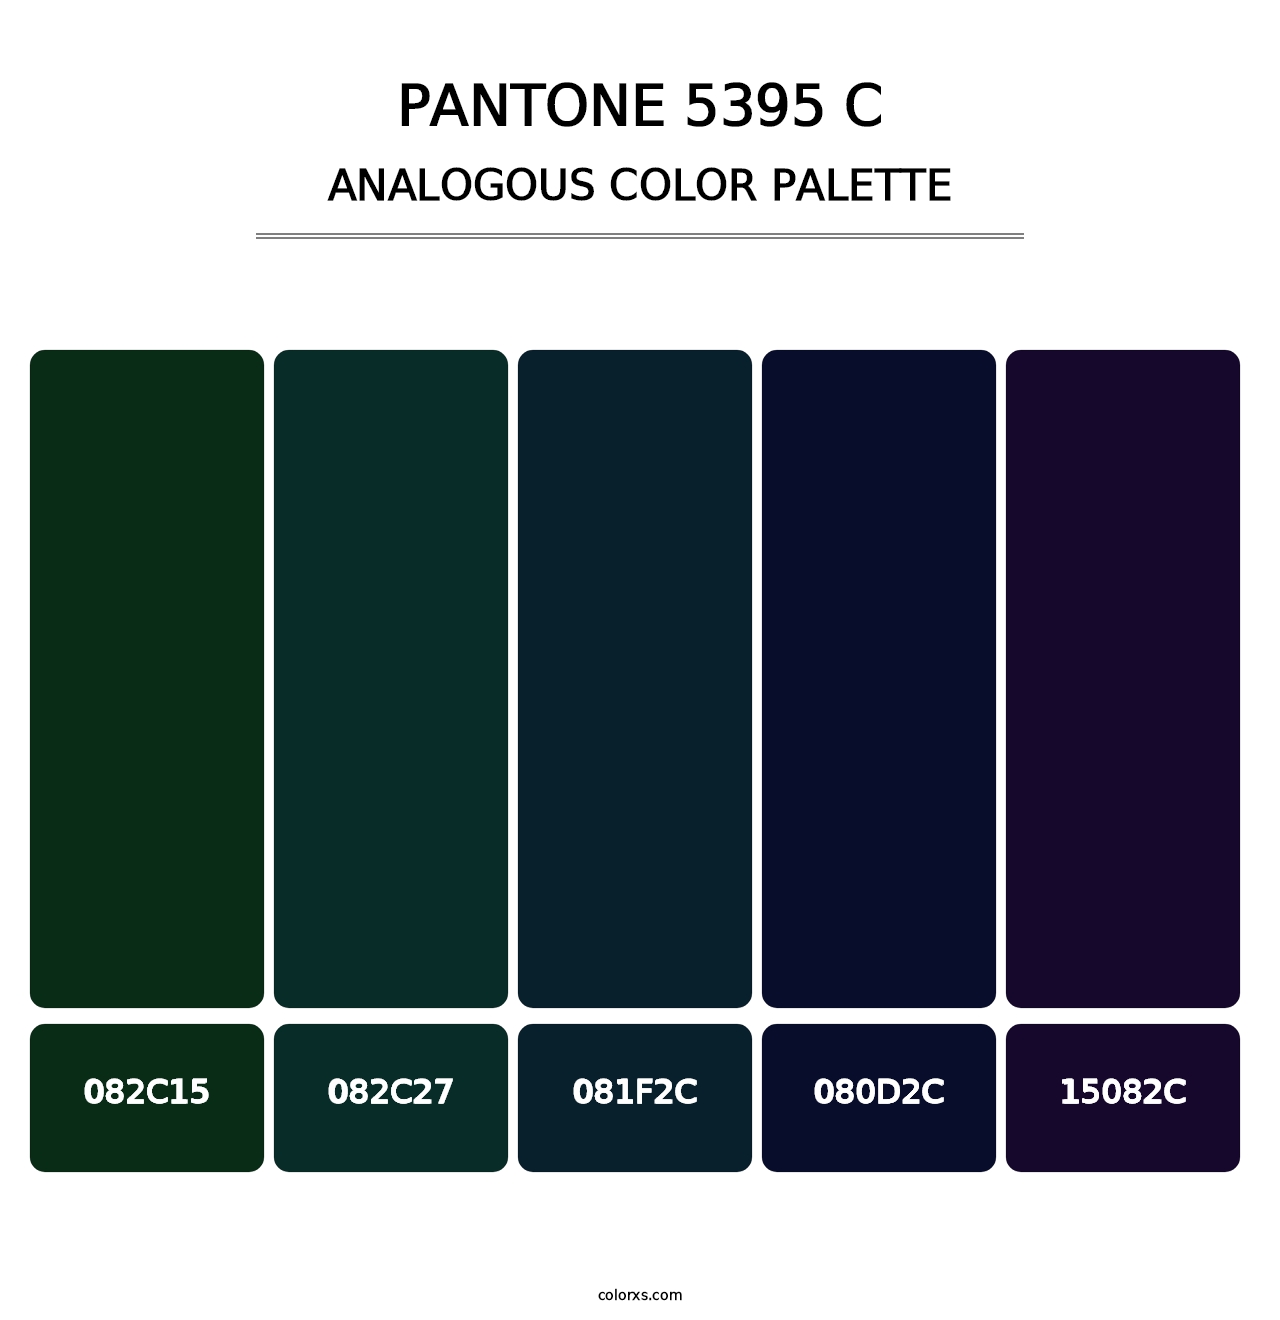 PANTONE 5395 C - Analogous Color Palette